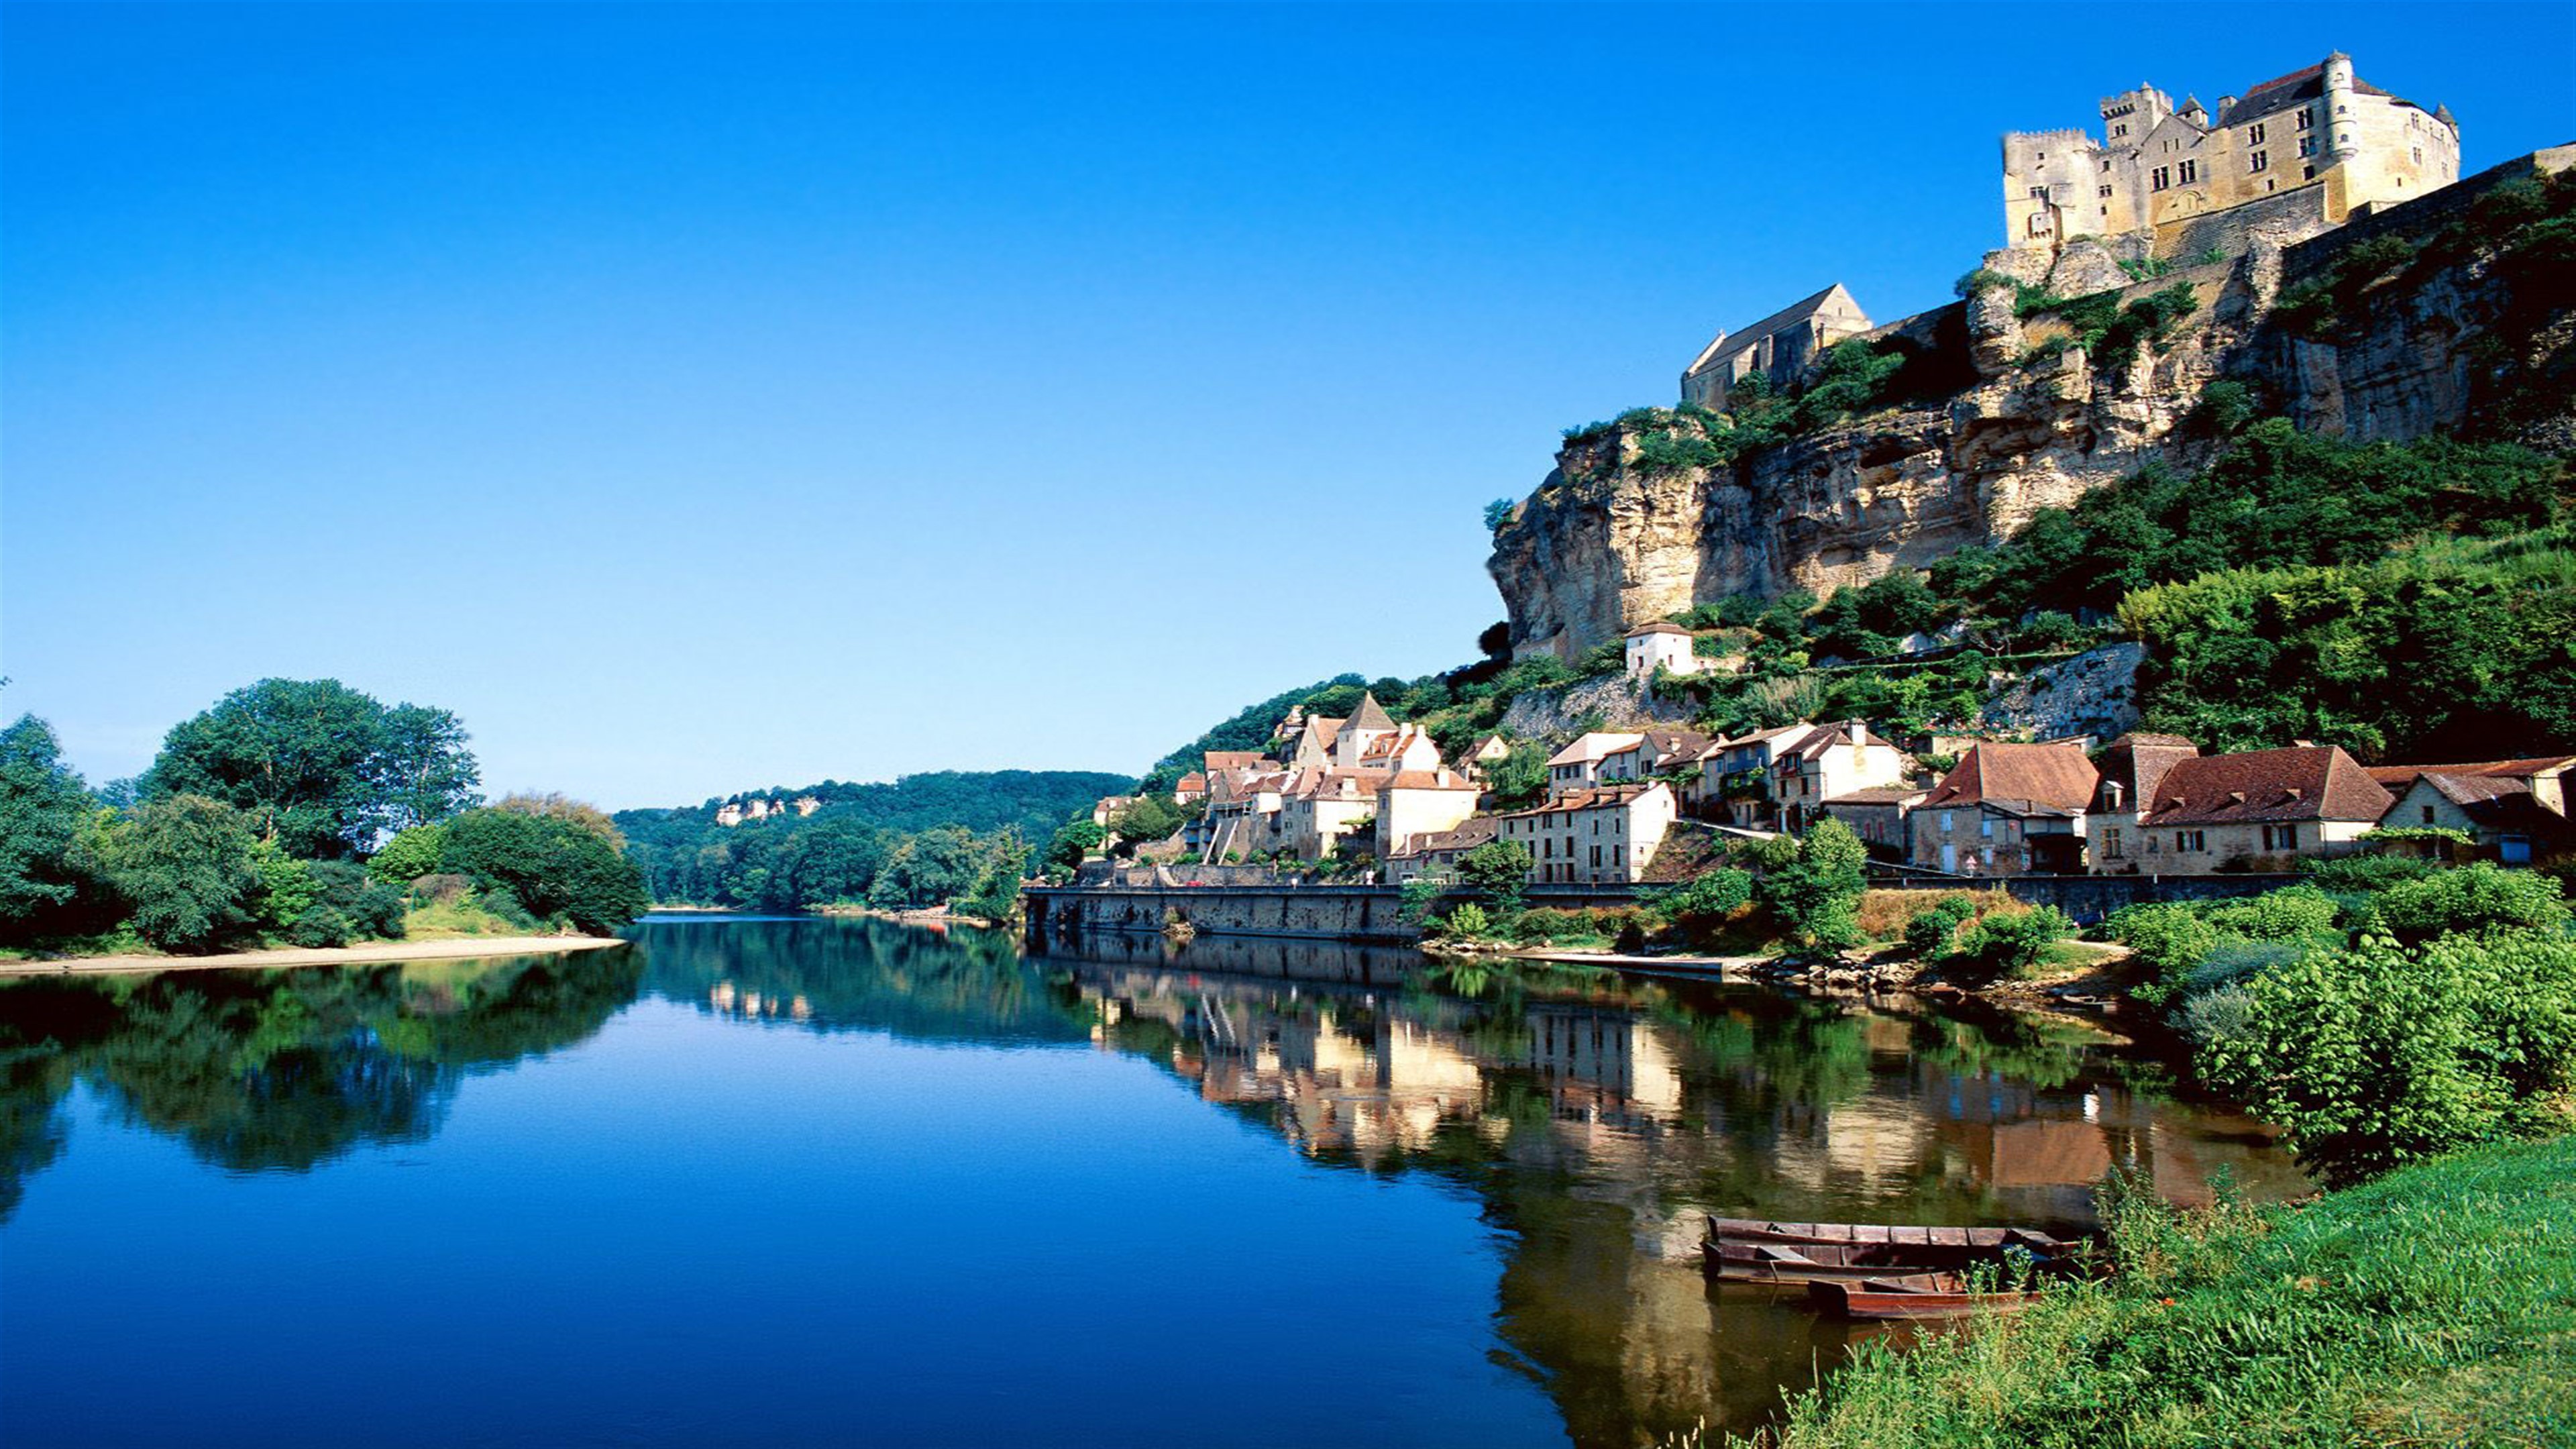 عکس طبیعت بکر حاشیه دریاچه در فرانسه برای سایت گردشگری